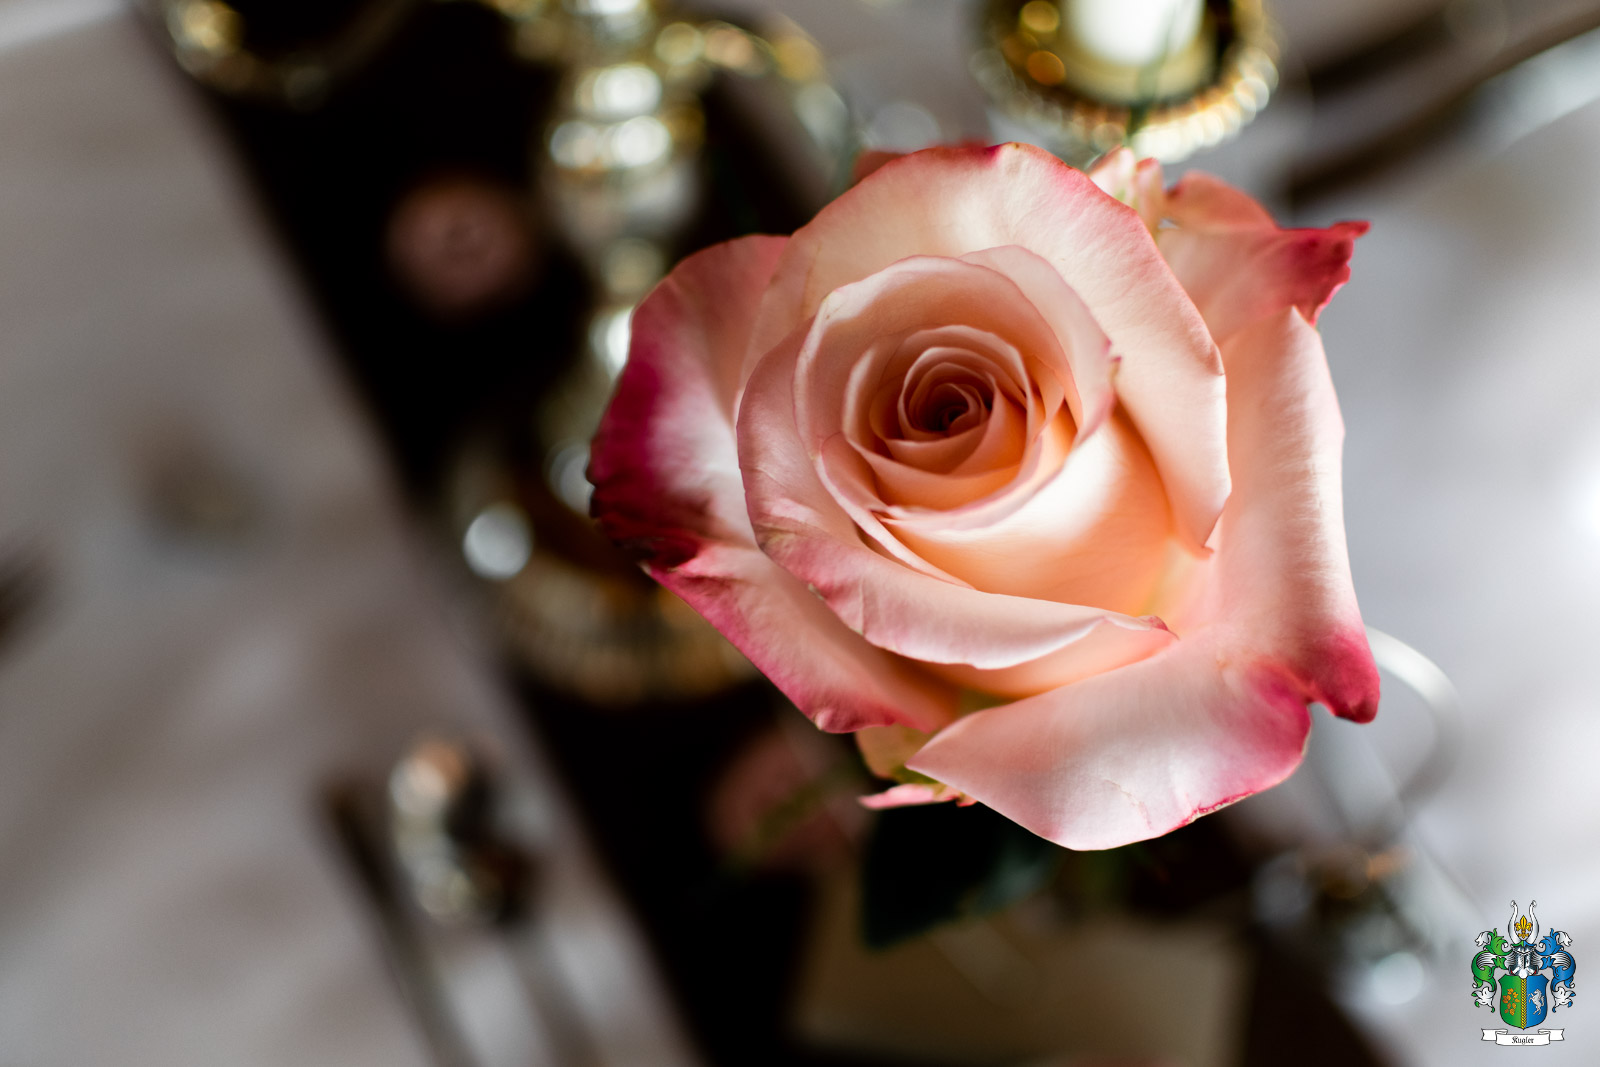 Die Rose als Symbol der Liebe darf bei einem Candle light Dinner natürlich nicht fehlen